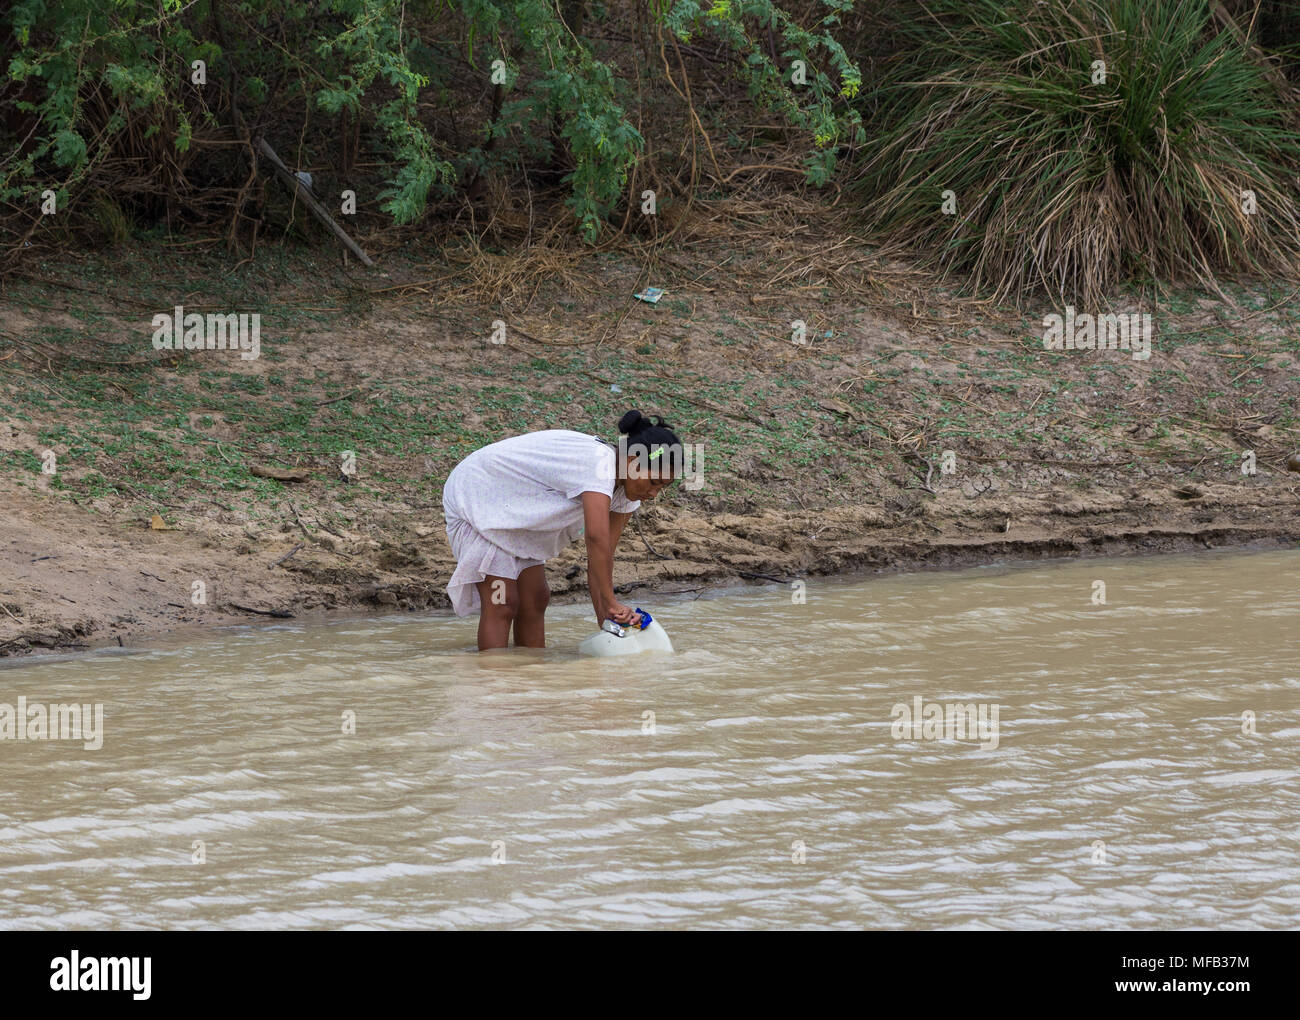 Eine junge Frau füllt einen grossen Krug Wasser in einem Teich im ländlichen Bereich. Kolumbien, Südamerika. Stockfoto